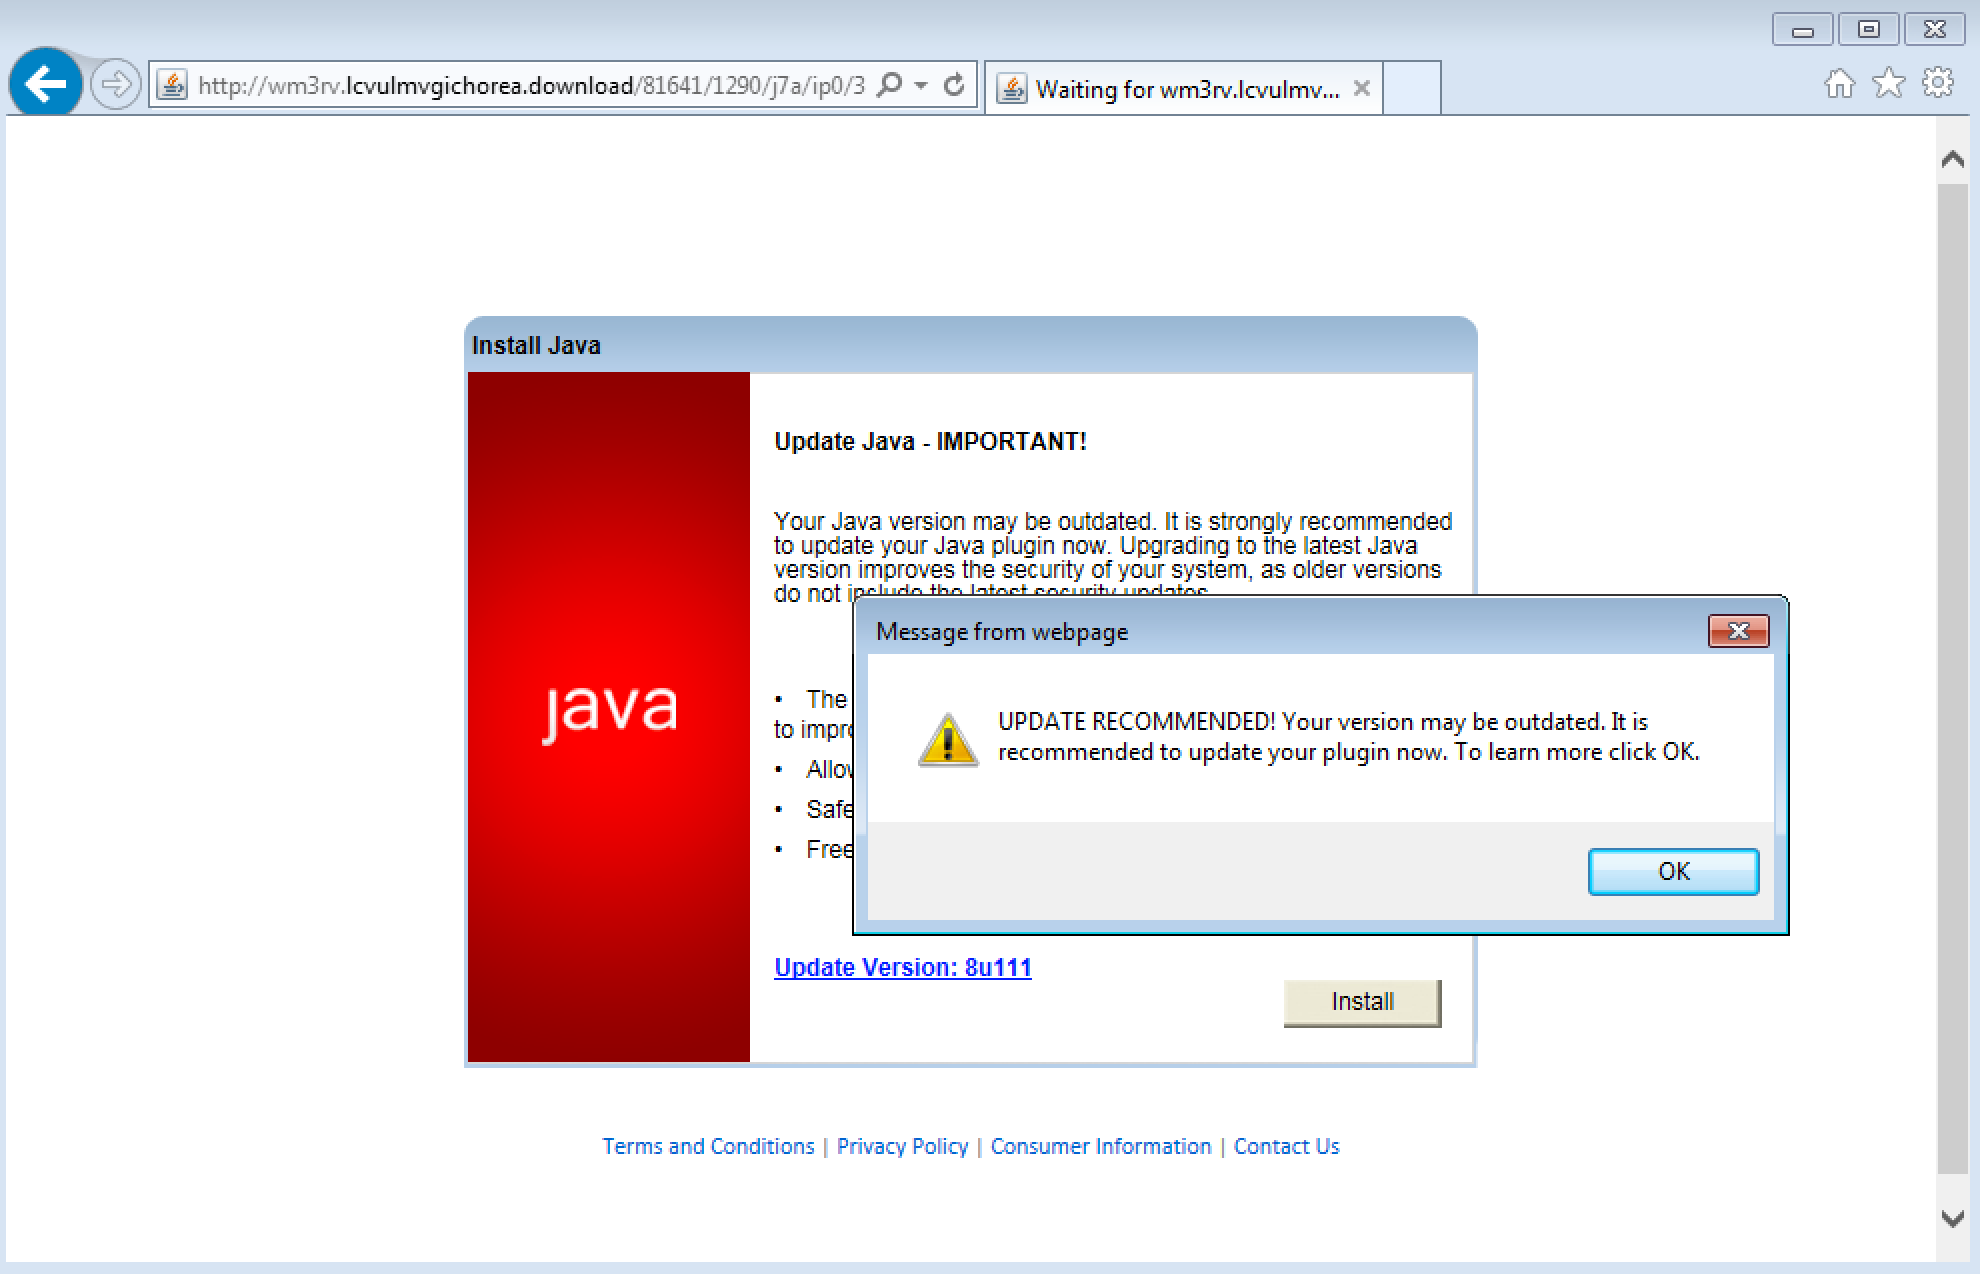 Java fraudulent warning